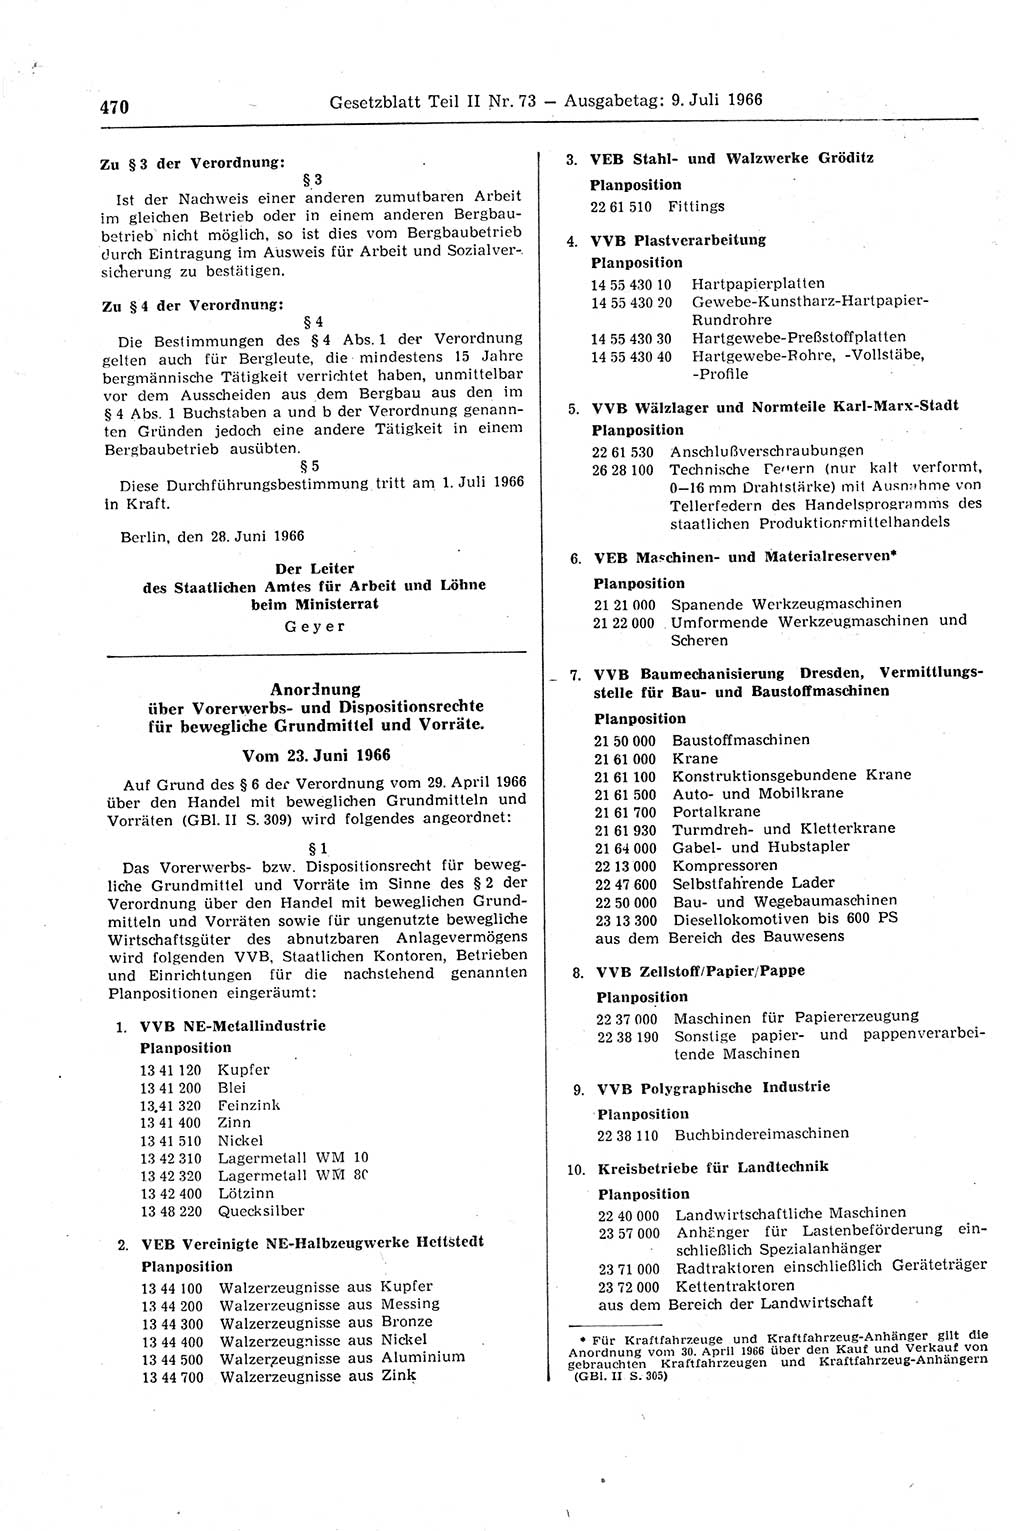 Gesetzblatt (GBl.) der Deutschen Demokratischen Republik (DDR) Teil ⅠⅠ 1966, Seite 470 (GBl. DDR ⅠⅠ 1966, S. 470)